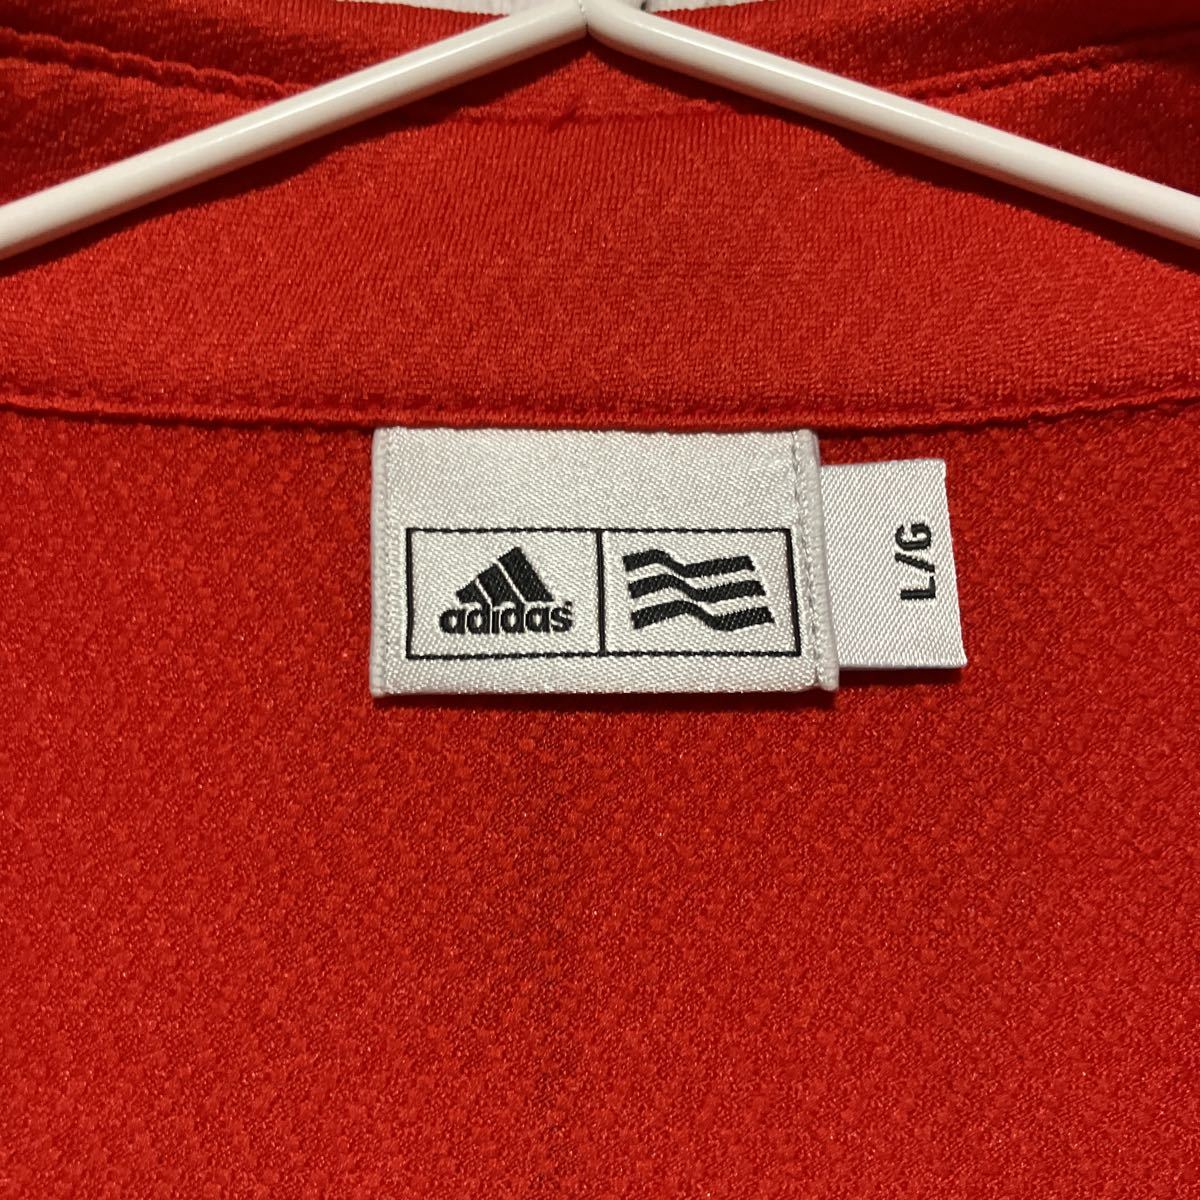 【adidas golf】アディダスゴルフ メンズ 半袖ハーフジップシャツ Lサイズ 赤 レッド 美品 送料無料